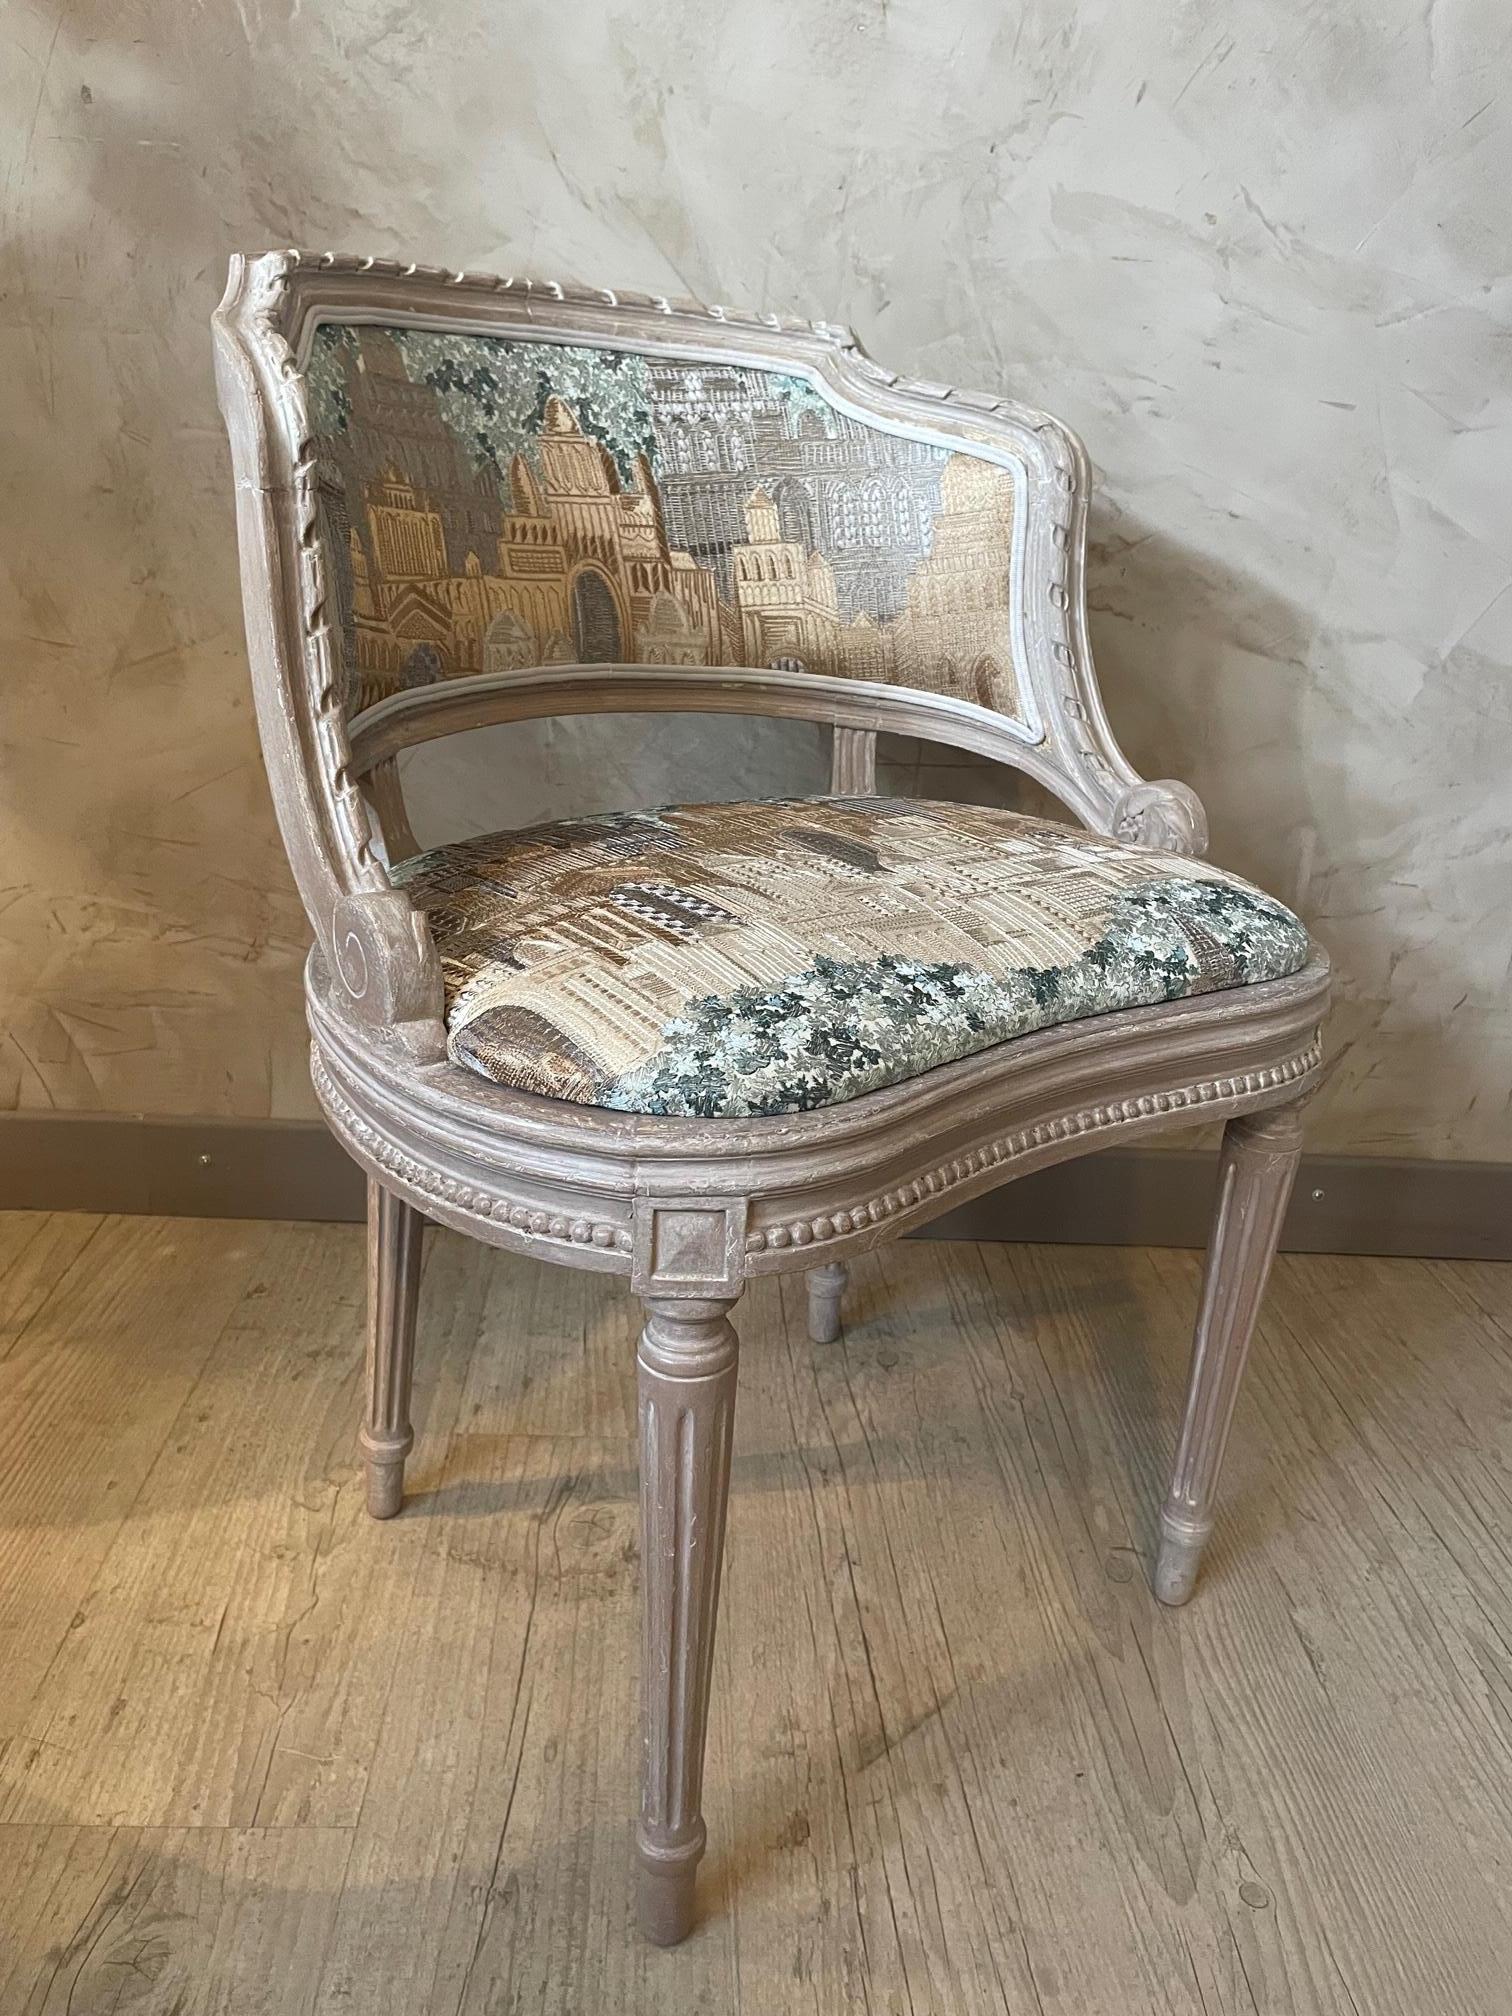 Belle chaise française de style Louis XVI du début du 20e siècle. 
Il a été retapissé avec soin par un tapissier professionnel avec un tissu de haute qualité fabriqué par la maison française Thevenon. 
Le bois a été nettoyé, poncé et peint avec un